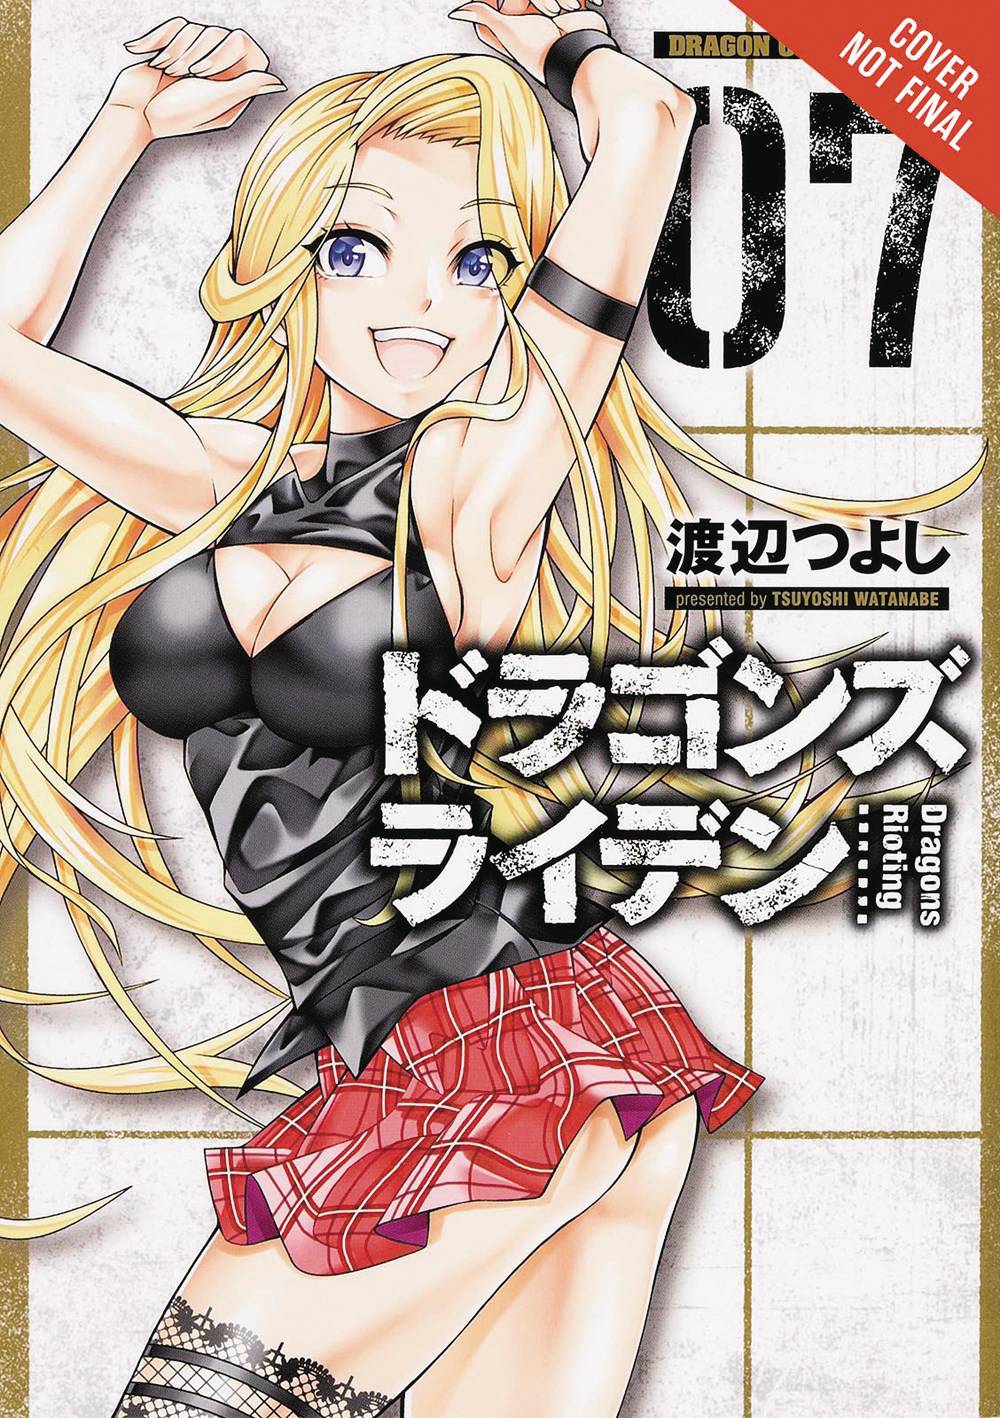 Dragons Rioting Manga Volume 7